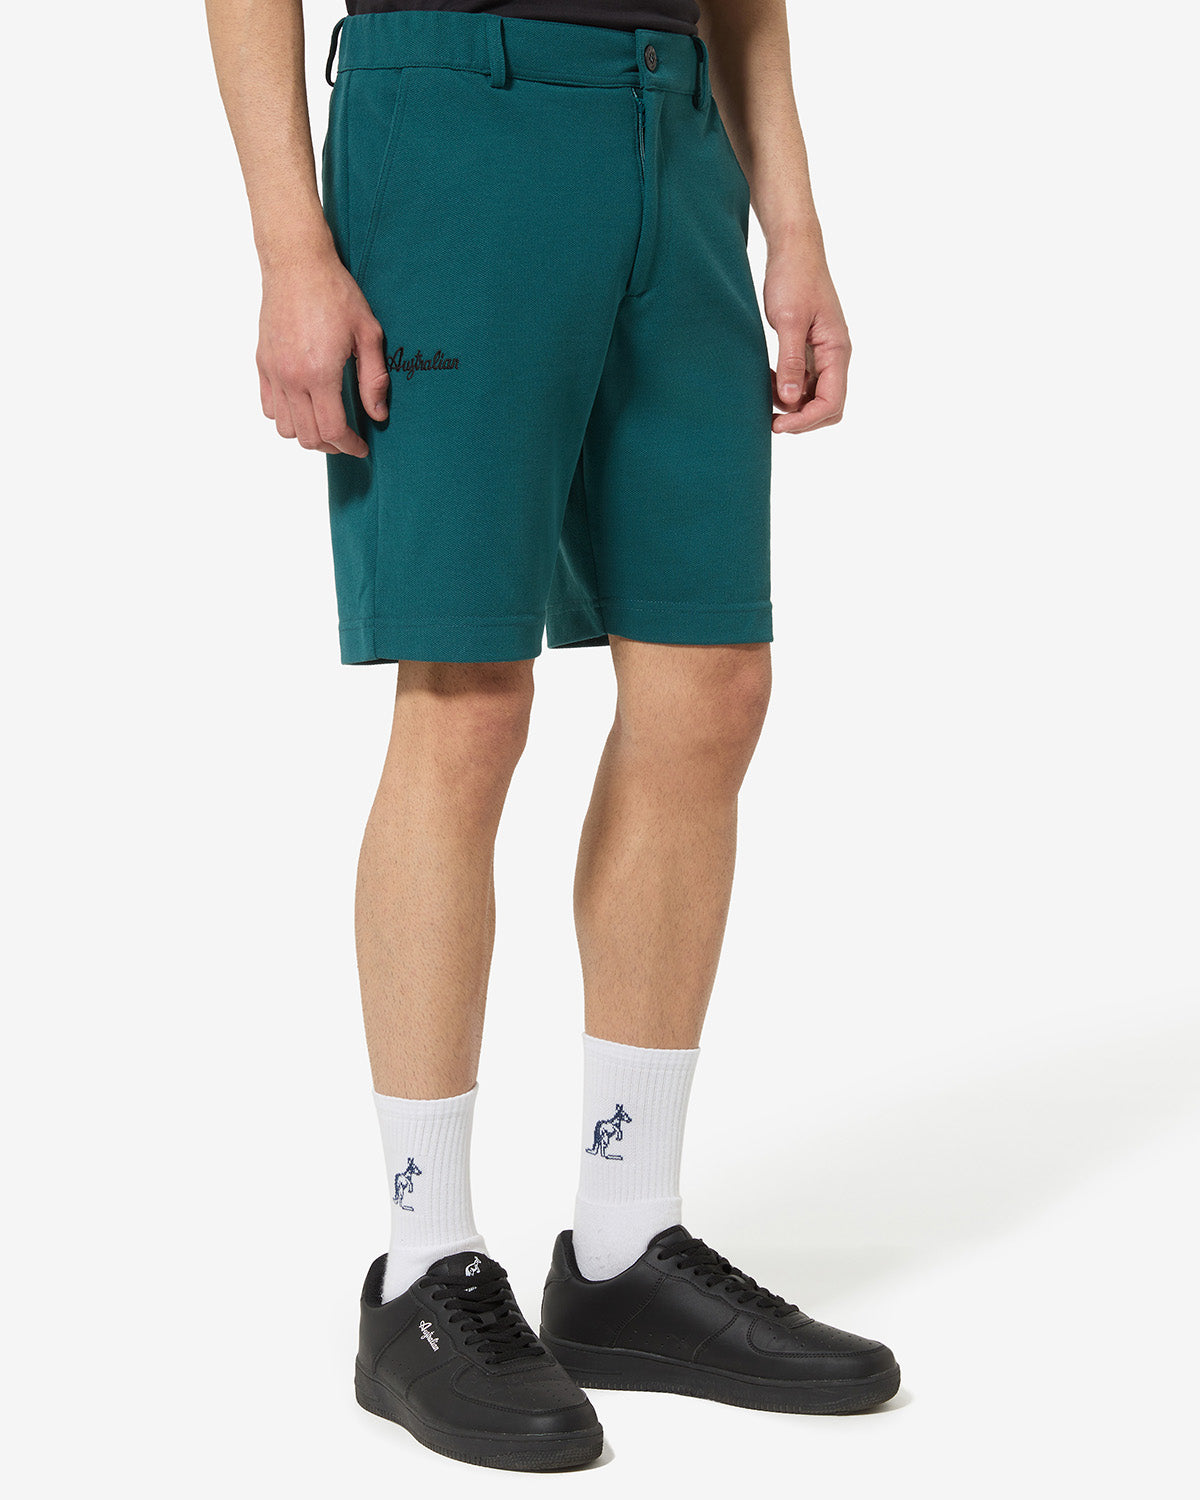 Club Short: Australian Sportswear